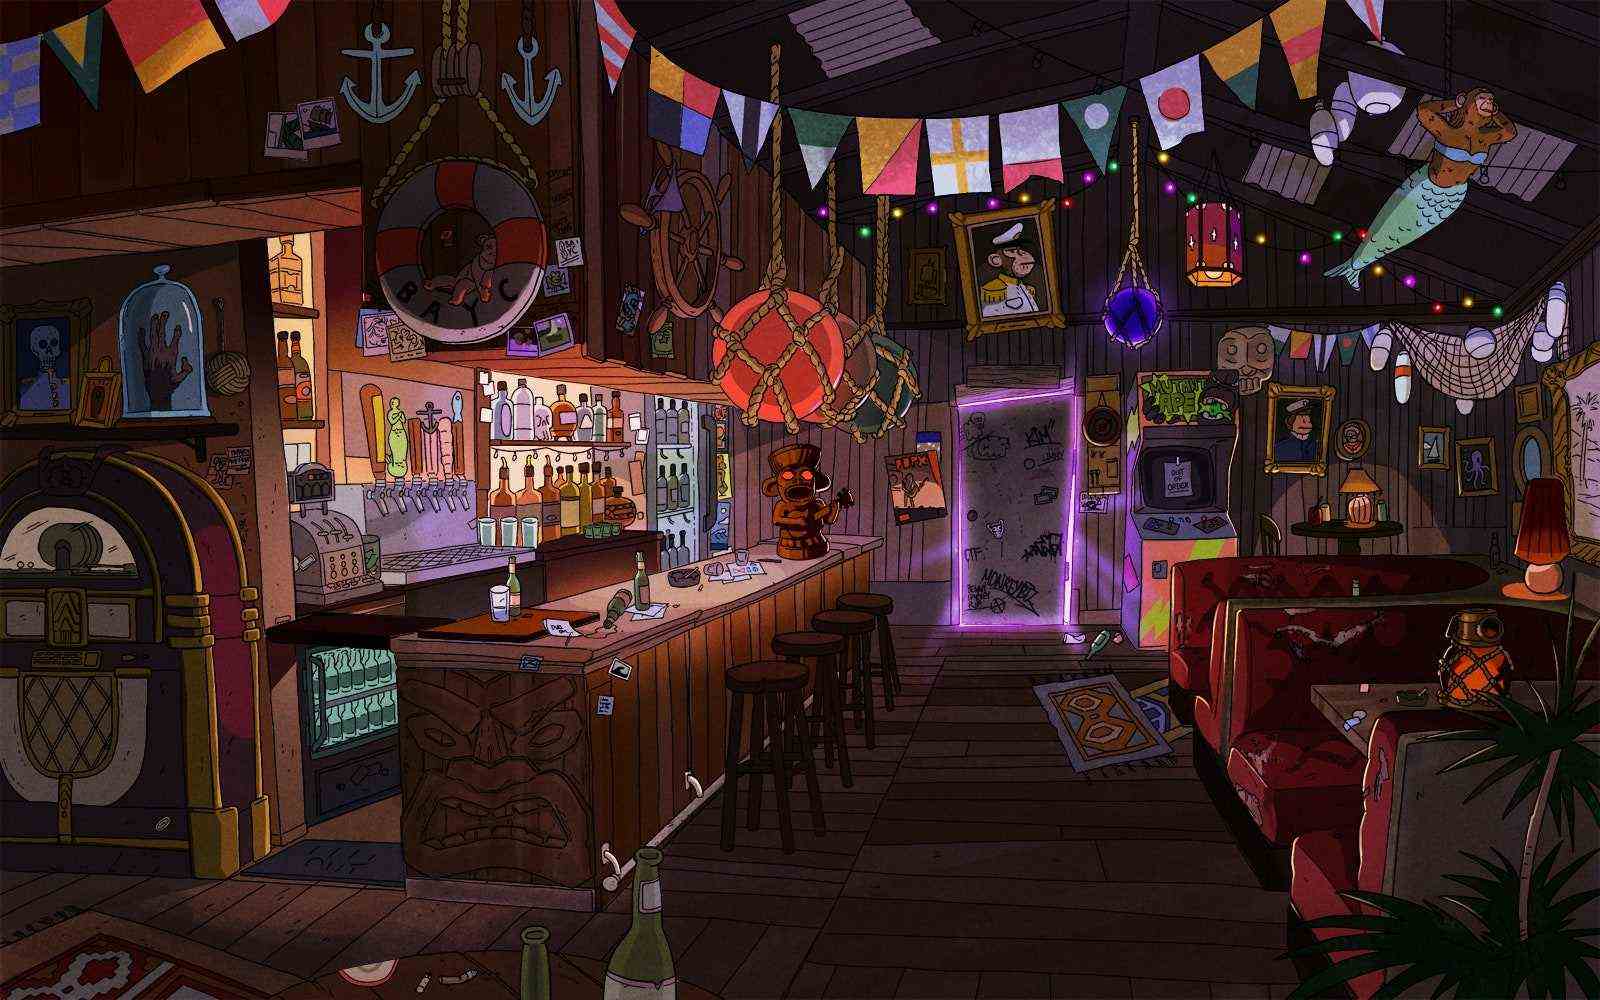 Eine Illustration des Inneren einer Bar.